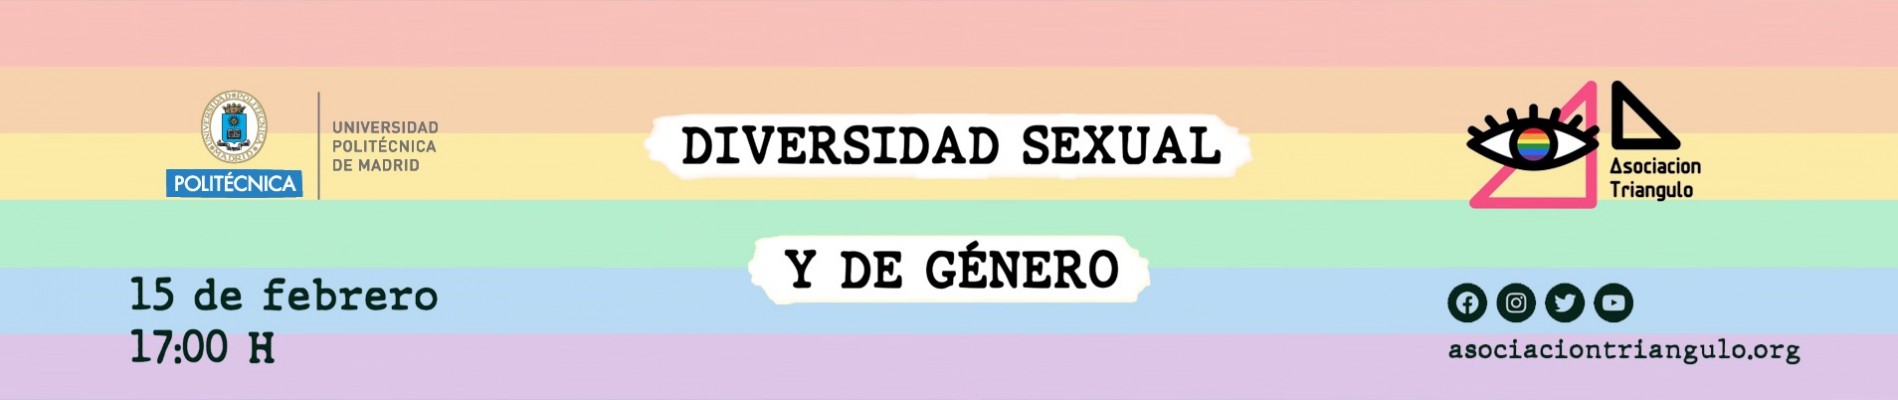 Banner Diversidad Sexual y de Género